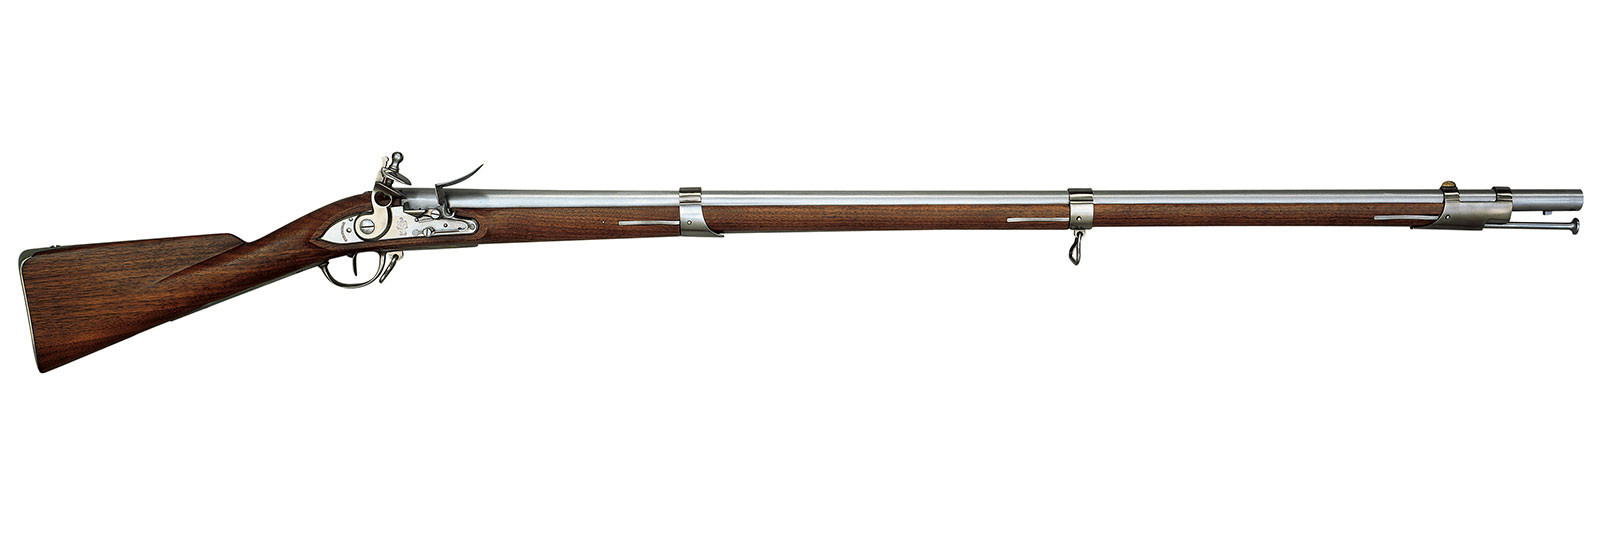 Fucile 1795 Springfield